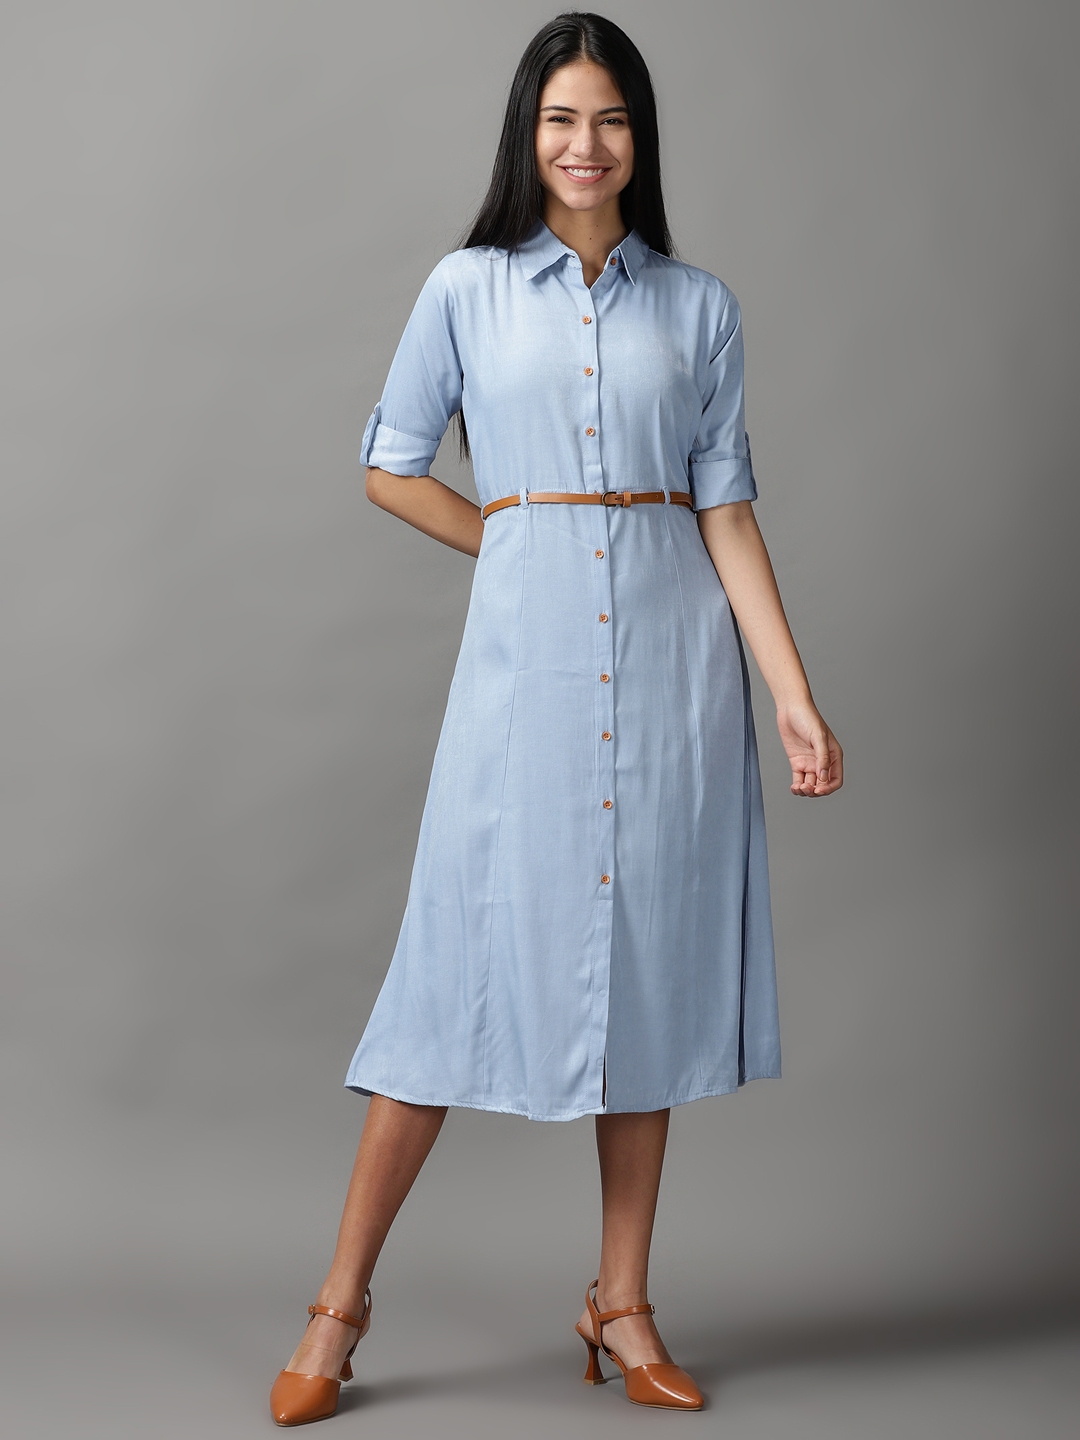 Women's Blue Cotton Solid Dresses